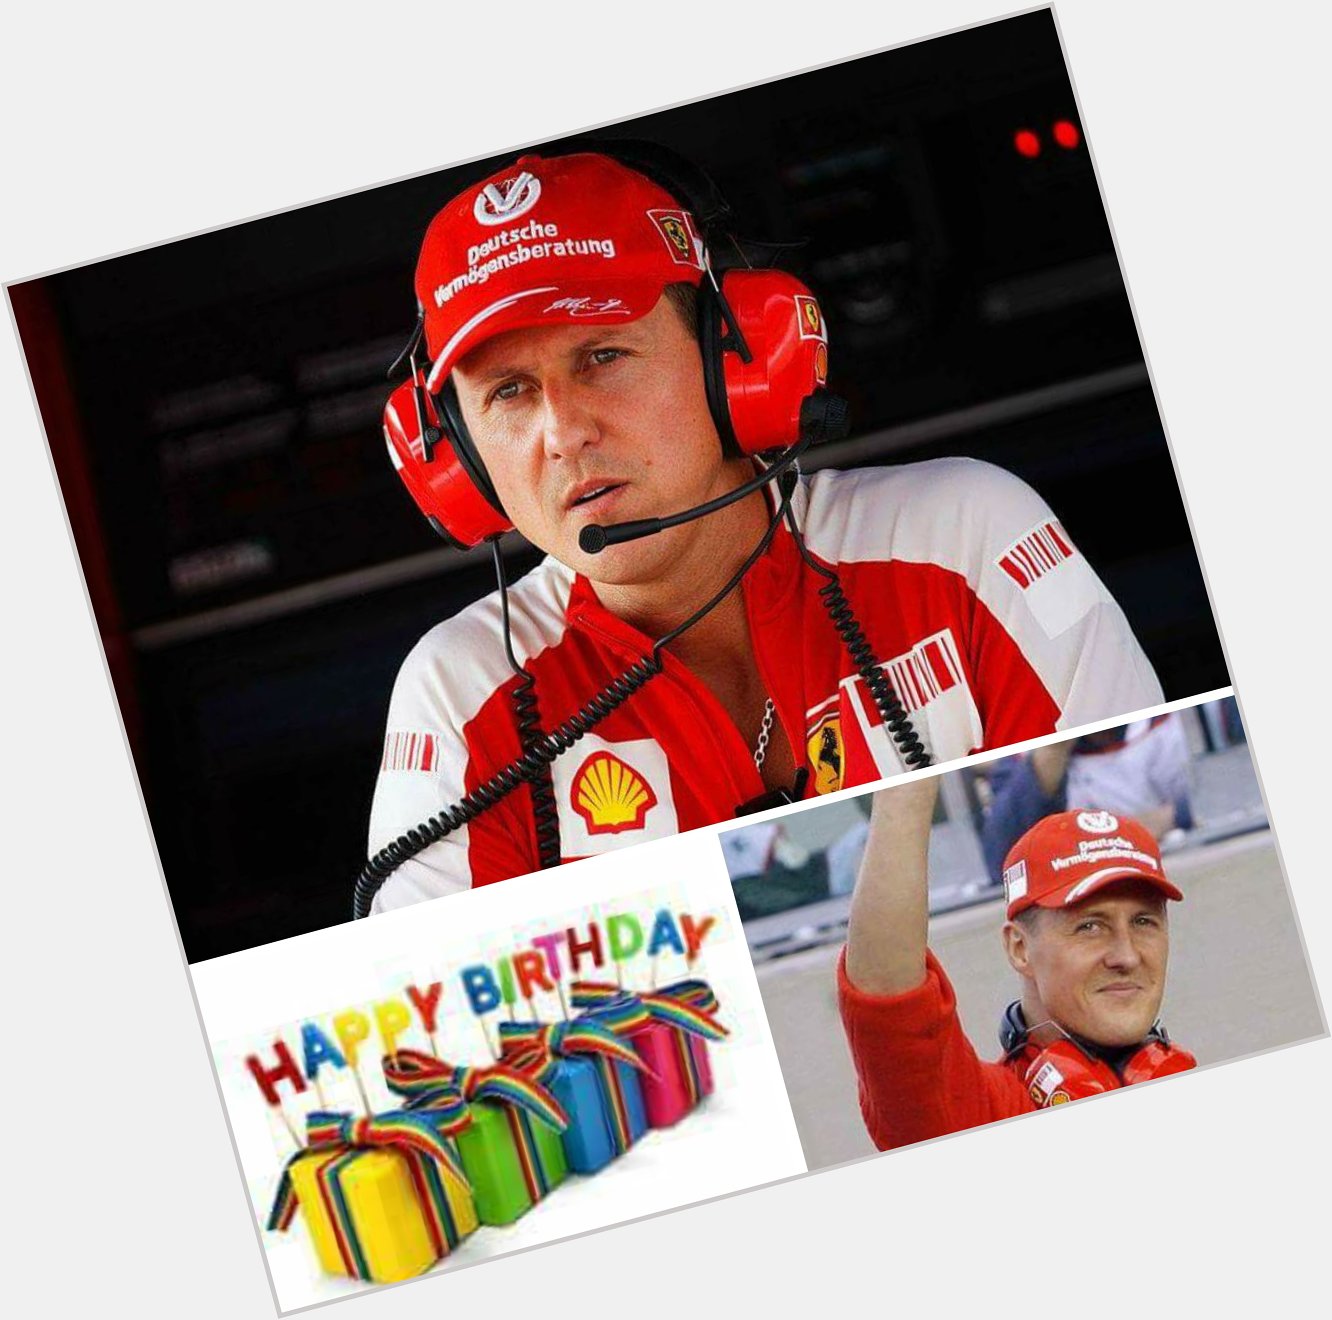 Happy birthday Michael Schumacher 